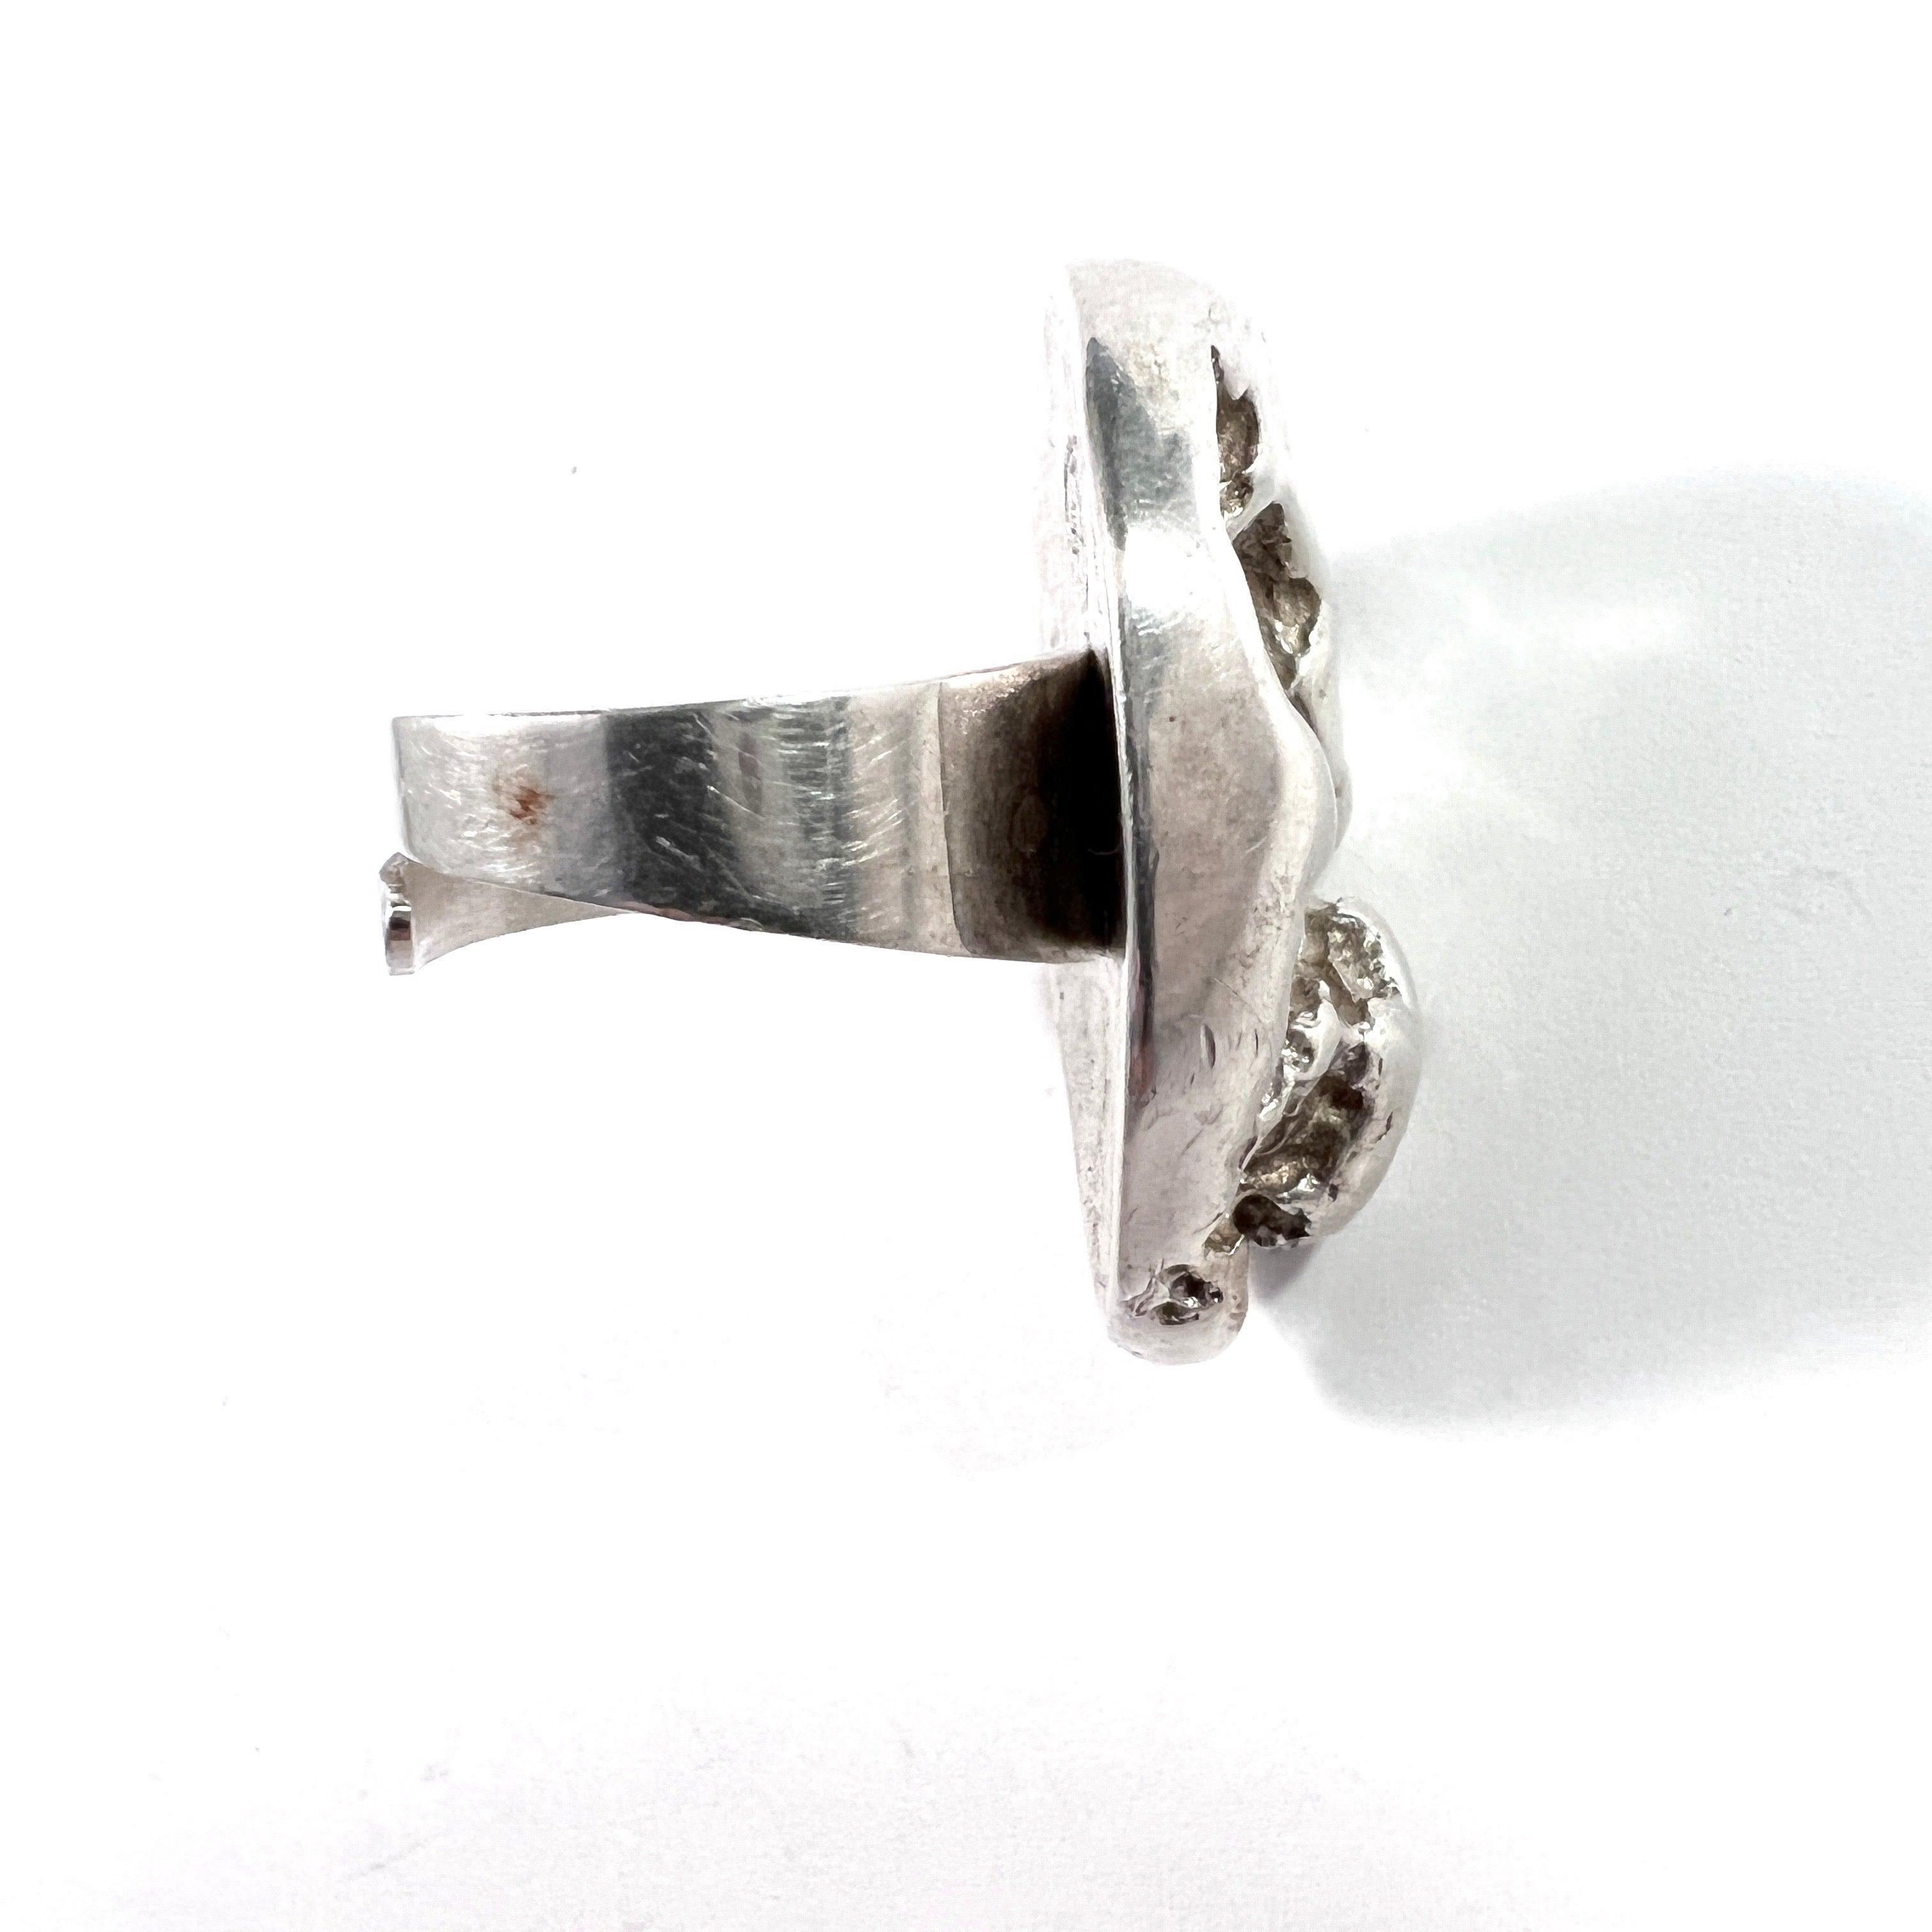 Denmark 1960-70s. Chunky 24.7gram Modernist Brutalist Silver Ring. Makers' Mark.